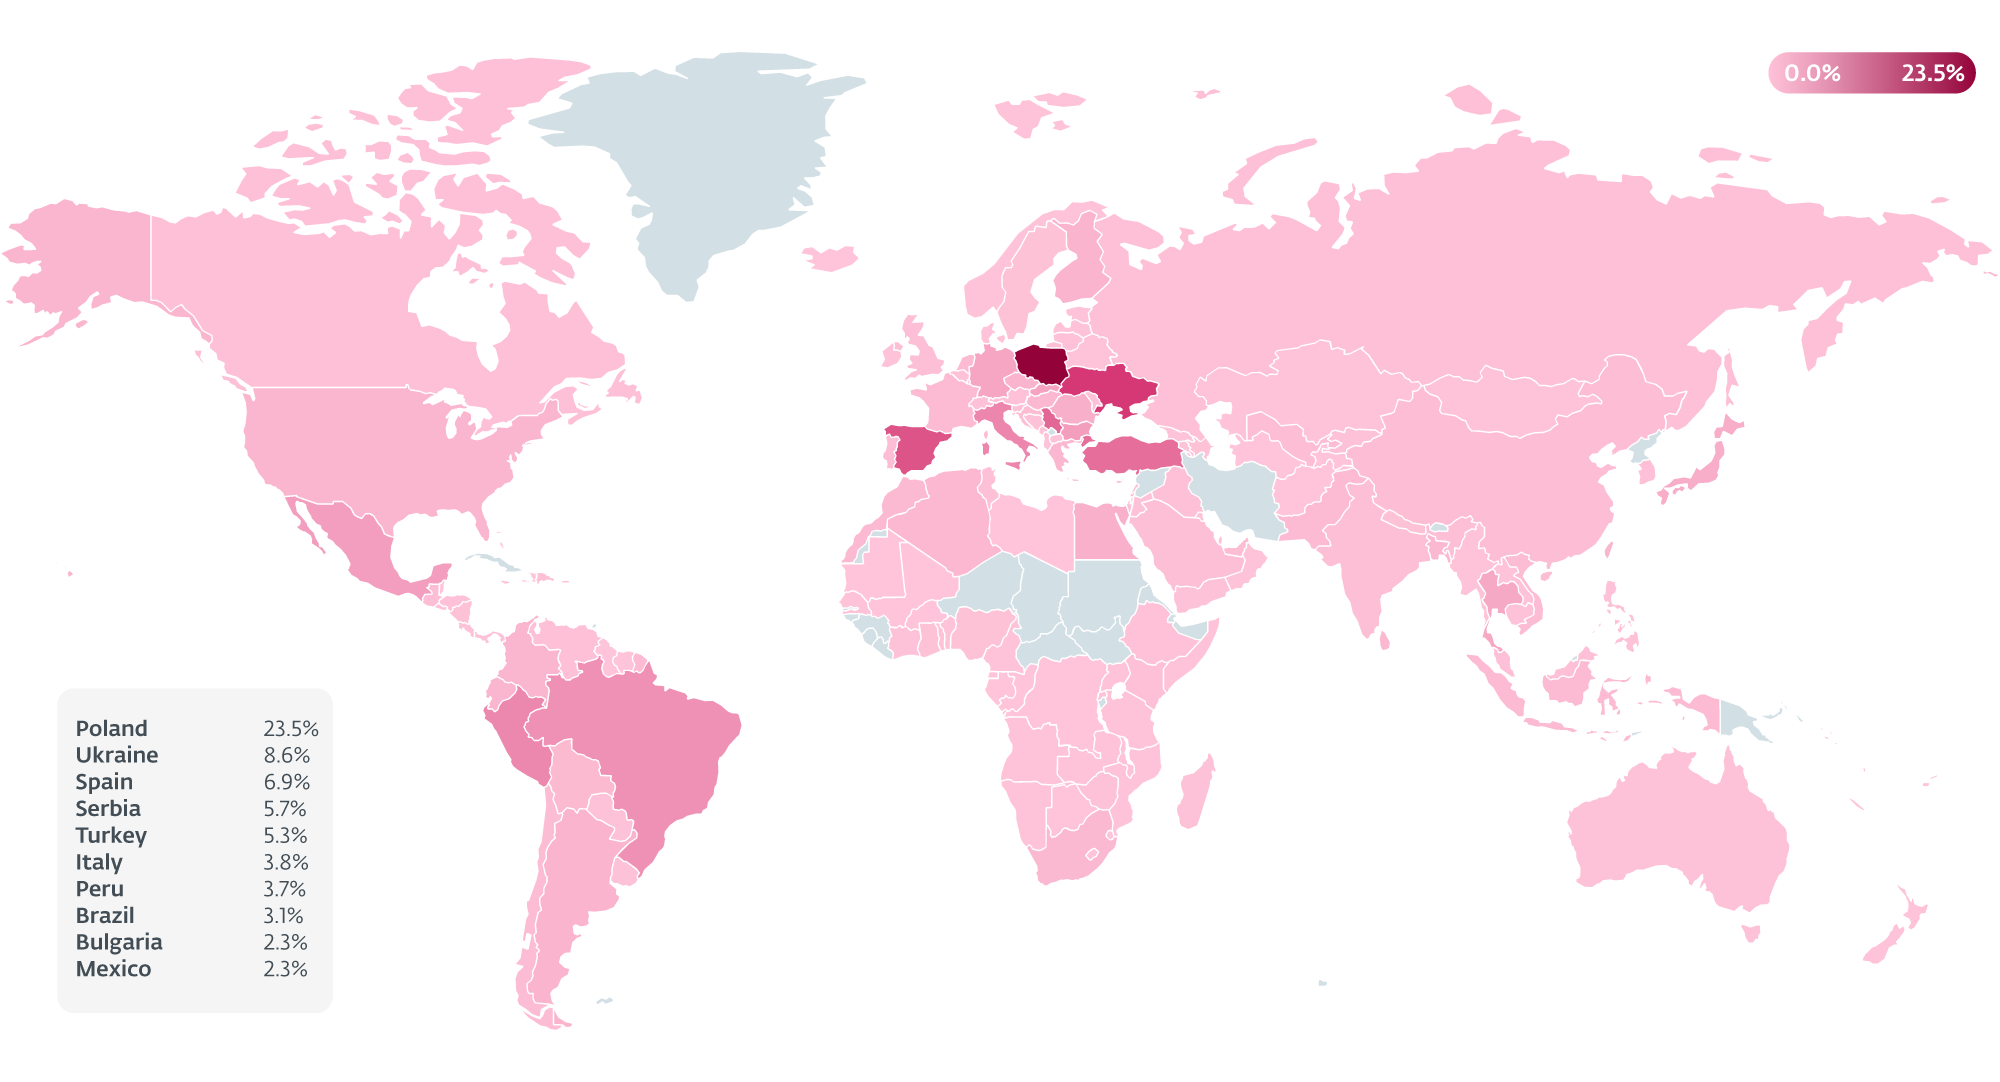 Slika 3. Toplotni zemljevid držav, na katere vpliva AceCryptor, glede na telemetrijo ESET